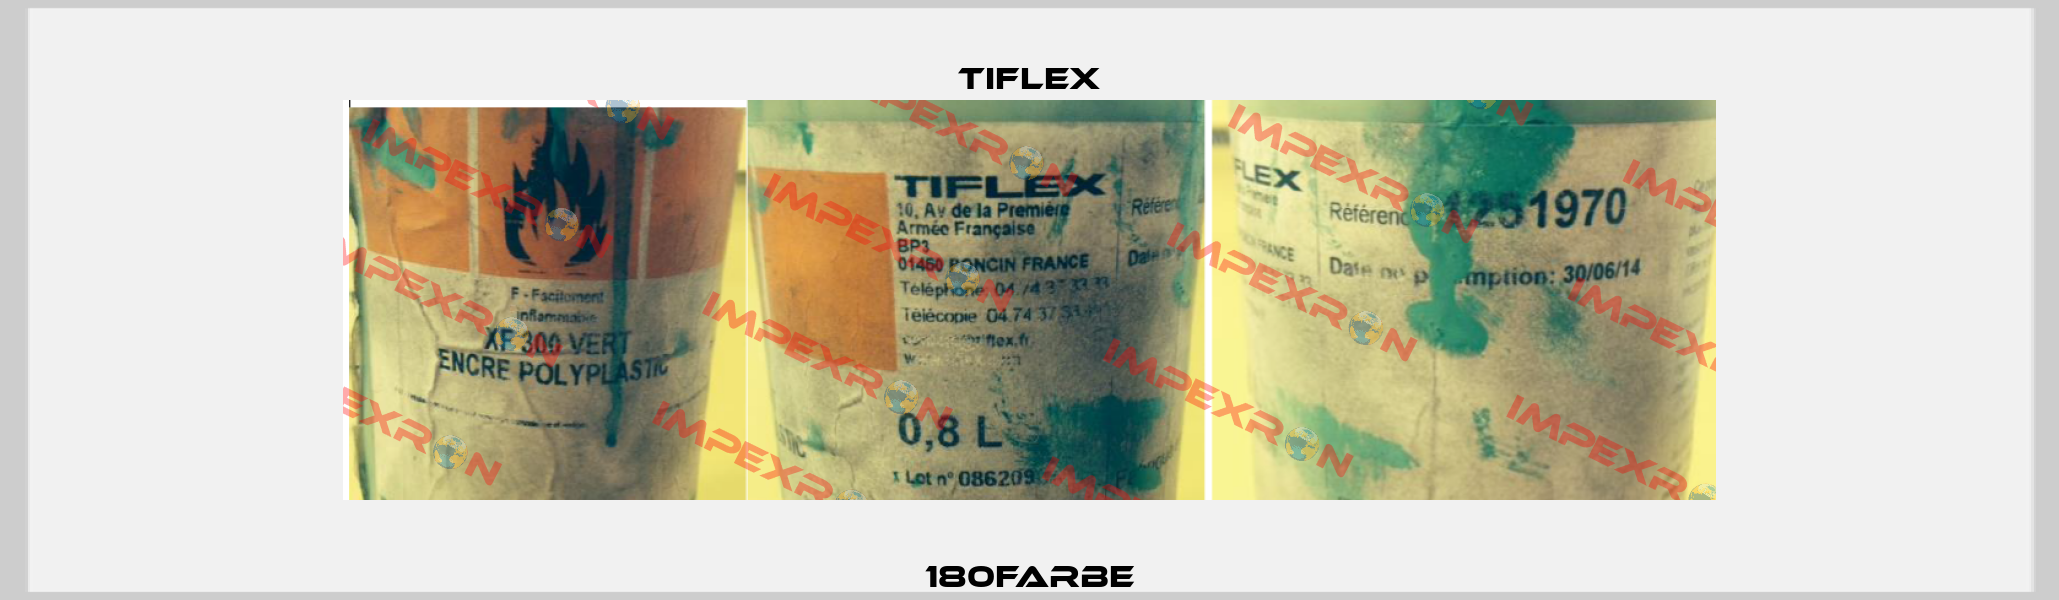 180Farbe Tiflex